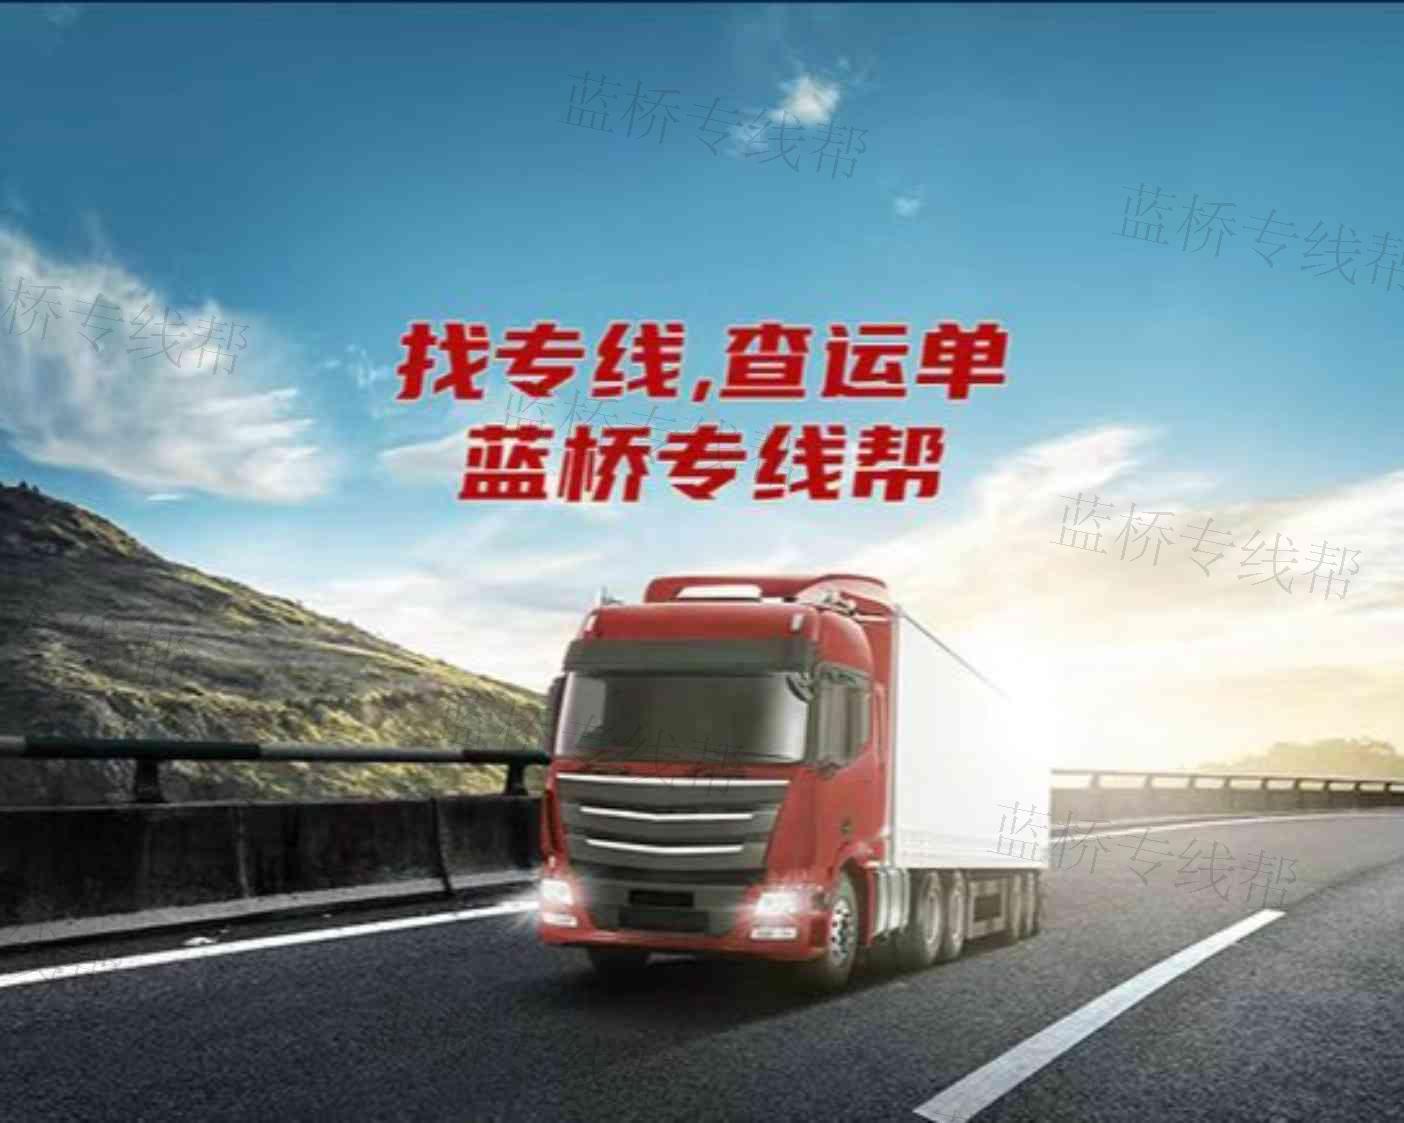 广东峰速供应链管理有限公司